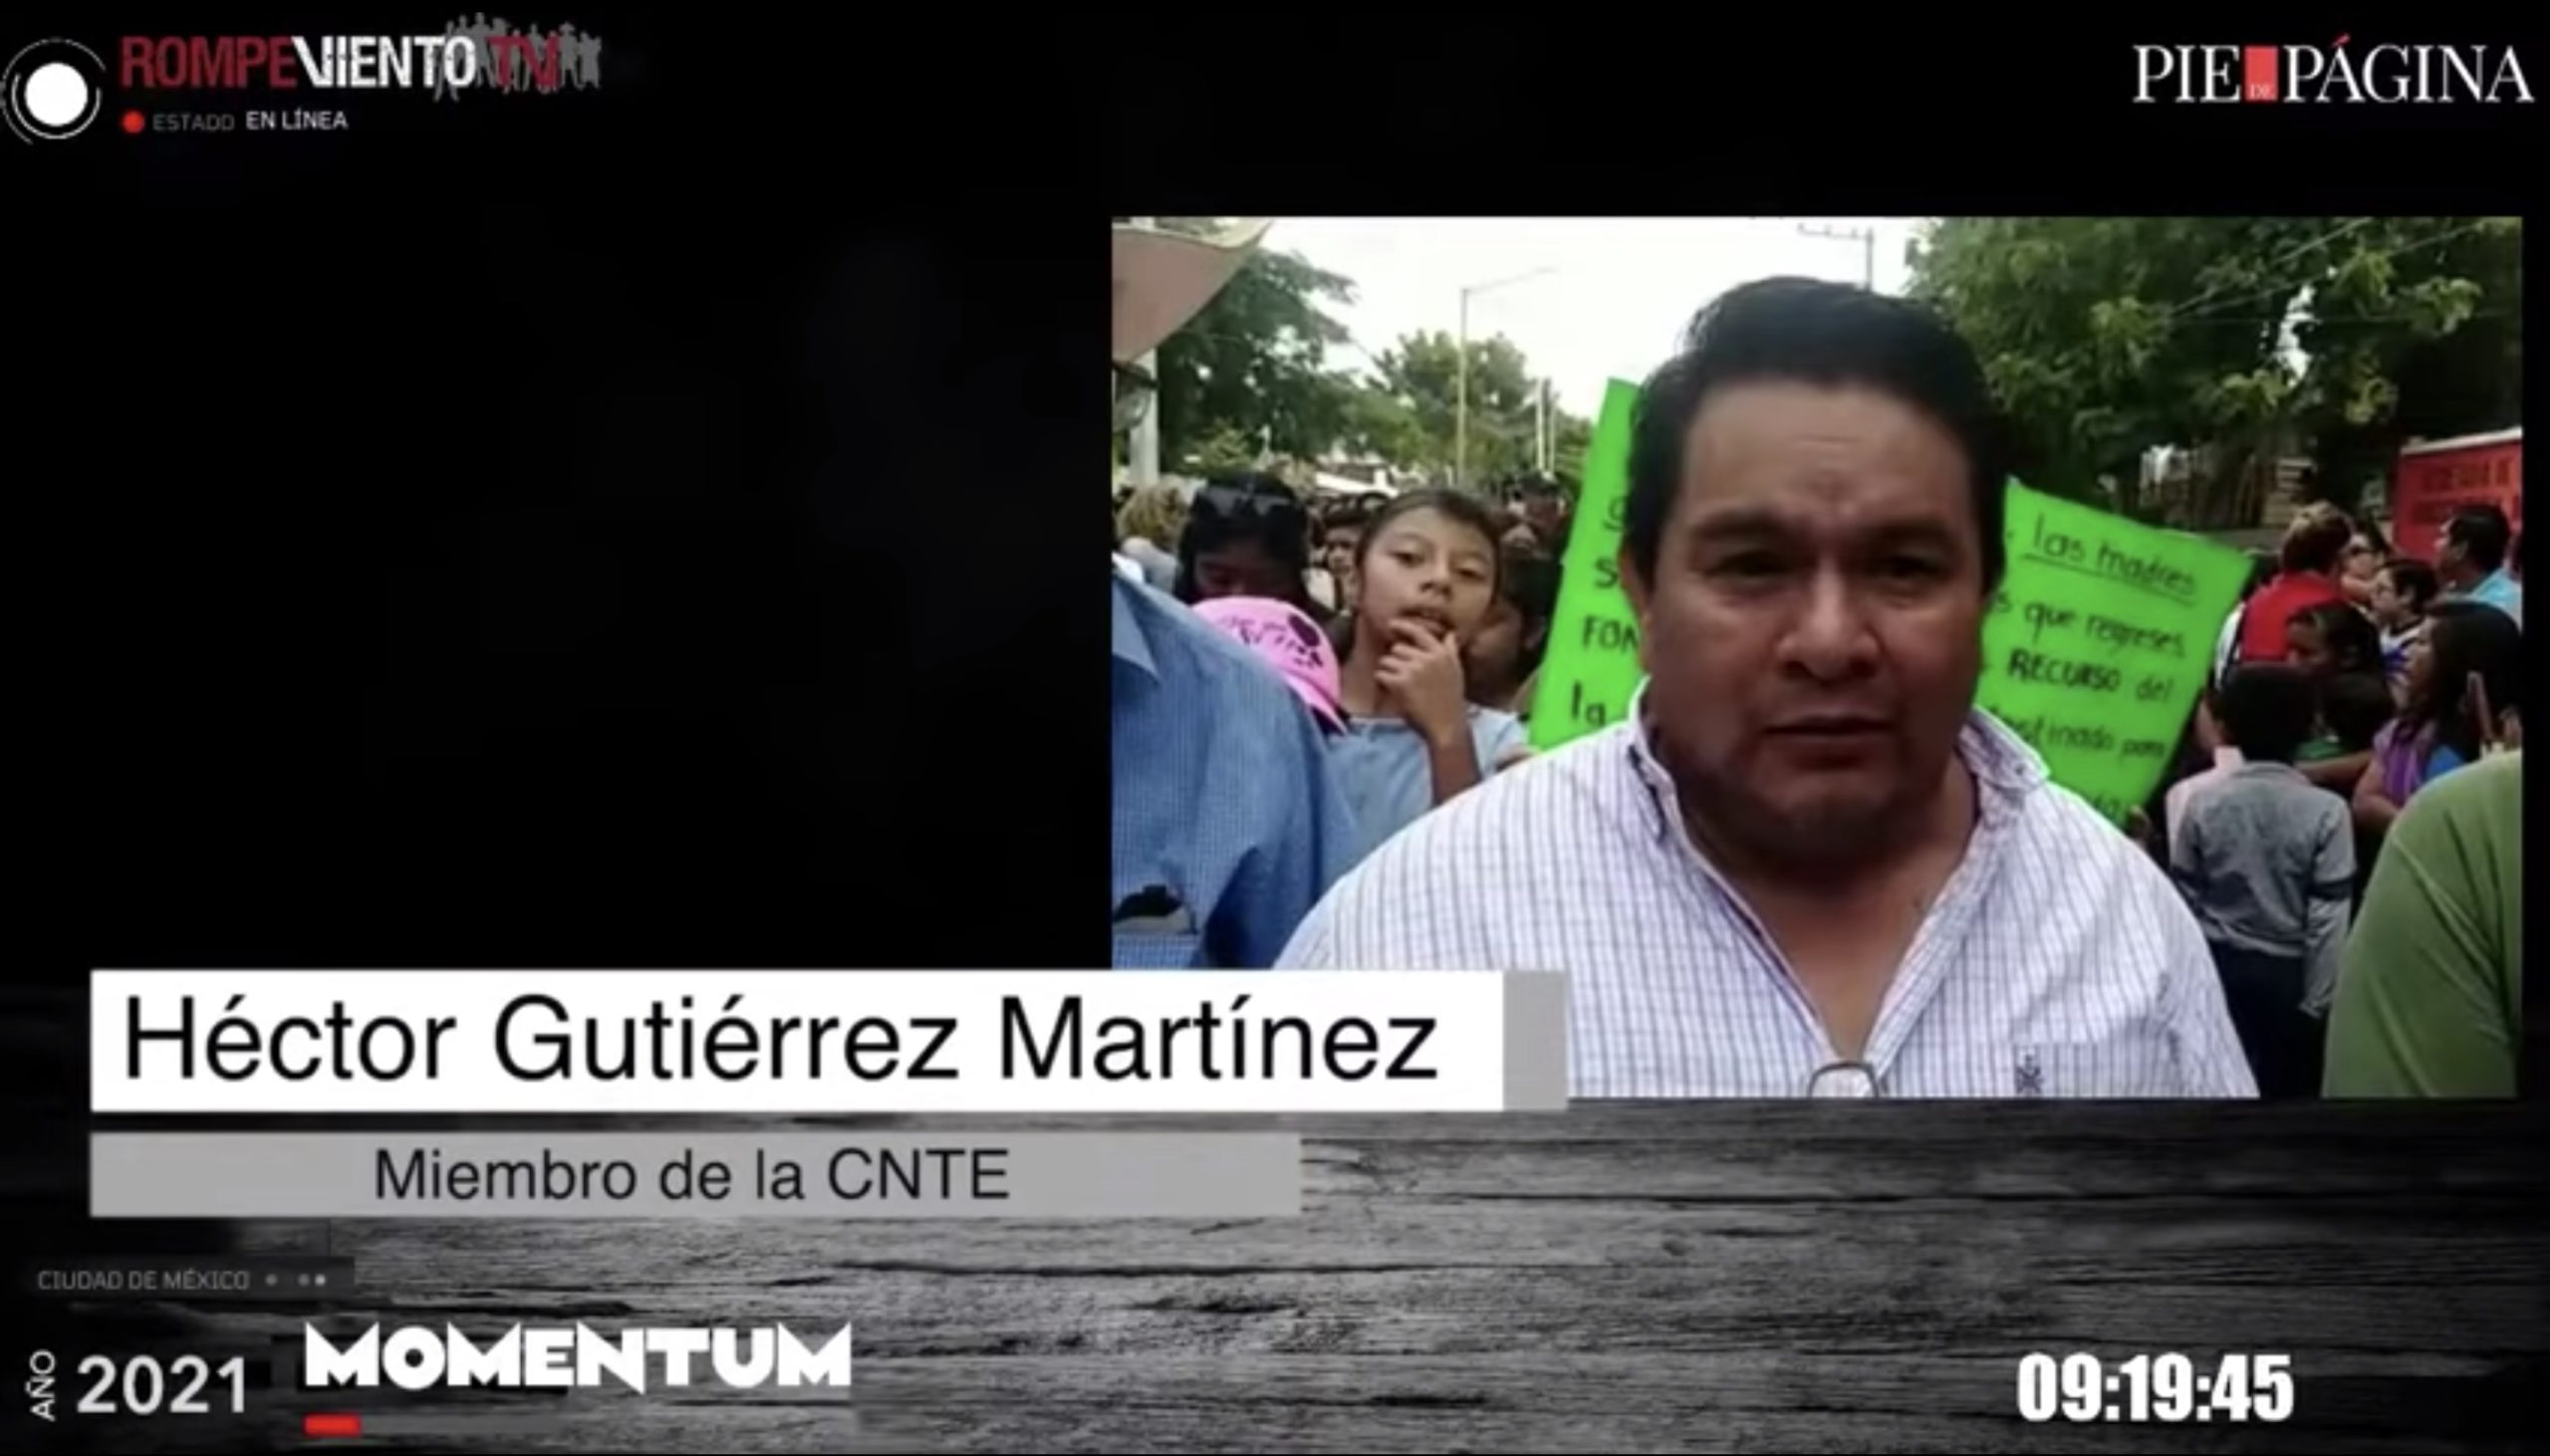 El bloqueo al presidente López Obrador, por parte de la CNTE-Chiapas